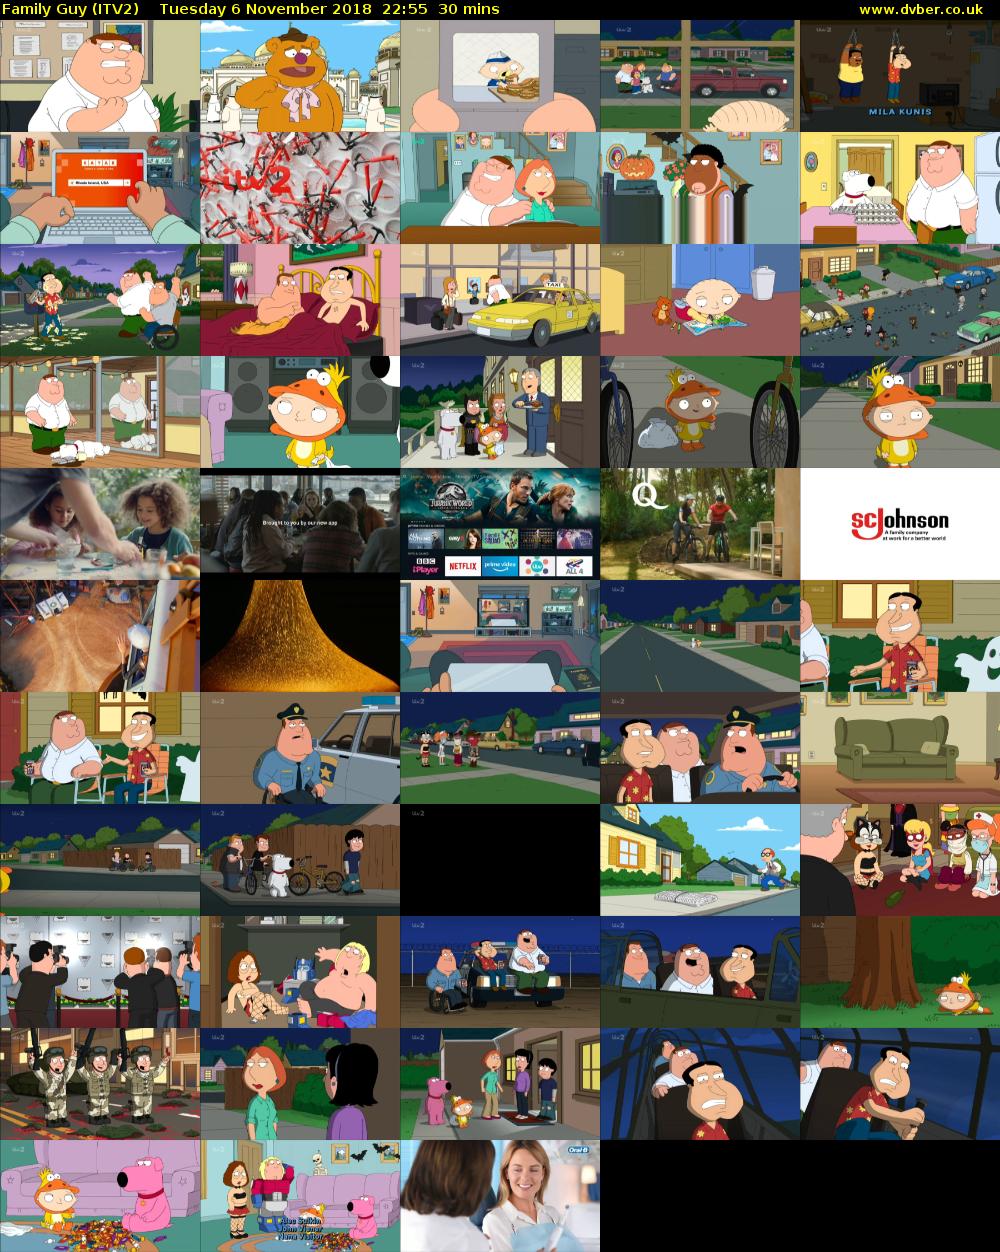 Family Guy (ITV2) Tuesday 6 November 2018 22:55 - 23:25